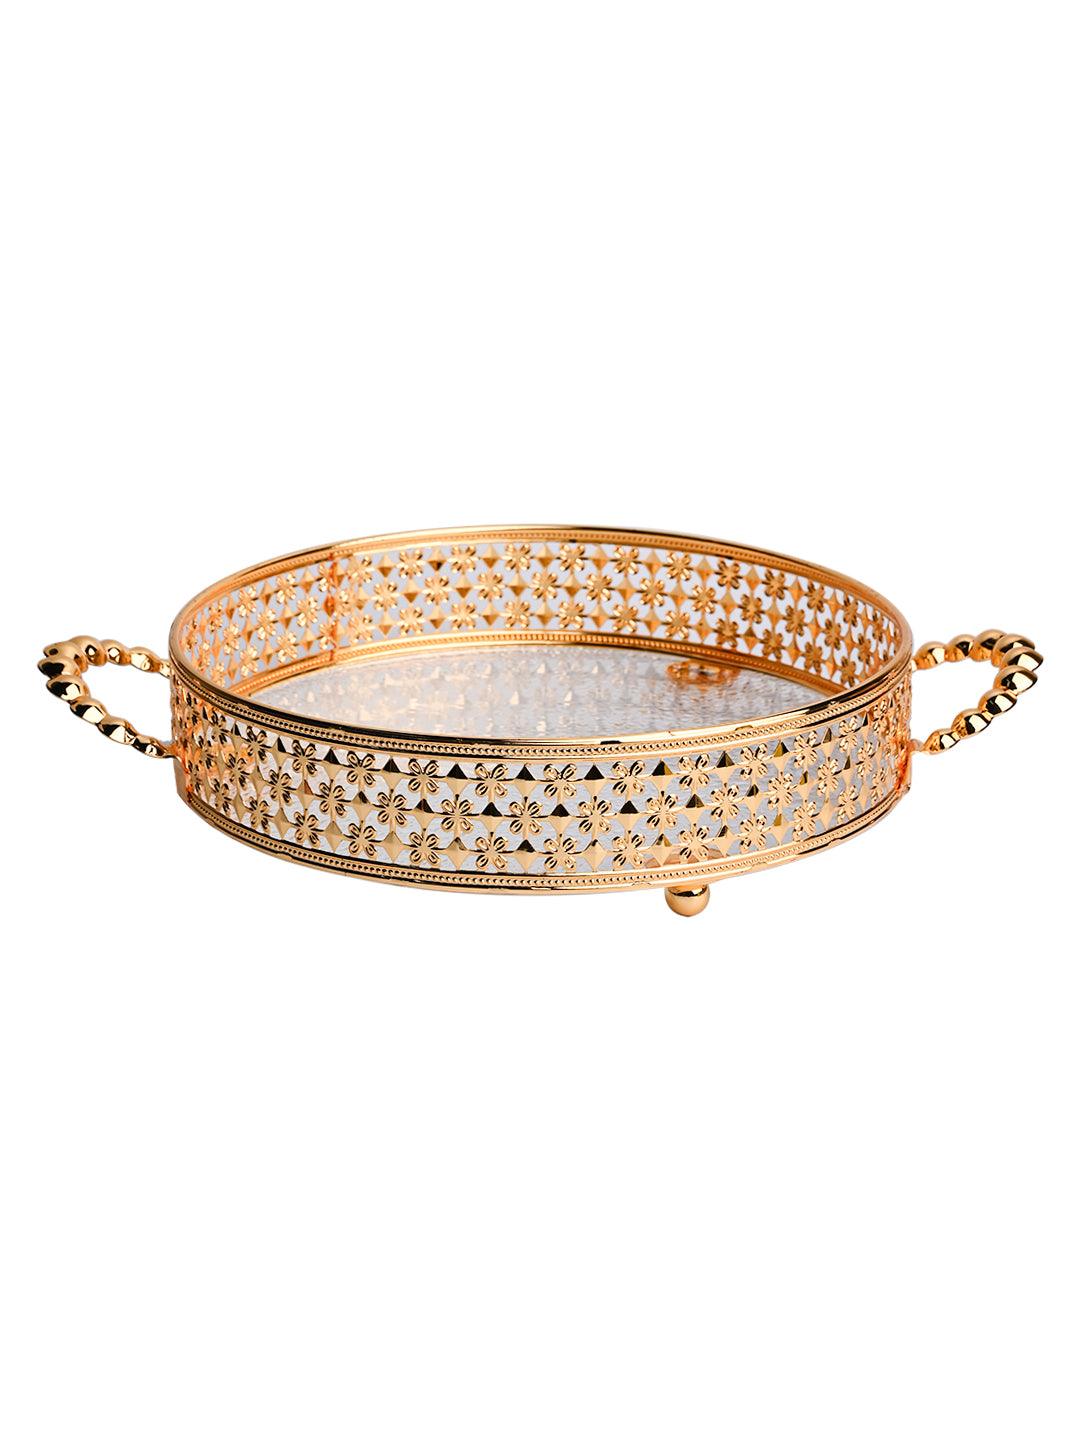 Golden Decorative Basket - MARKET99